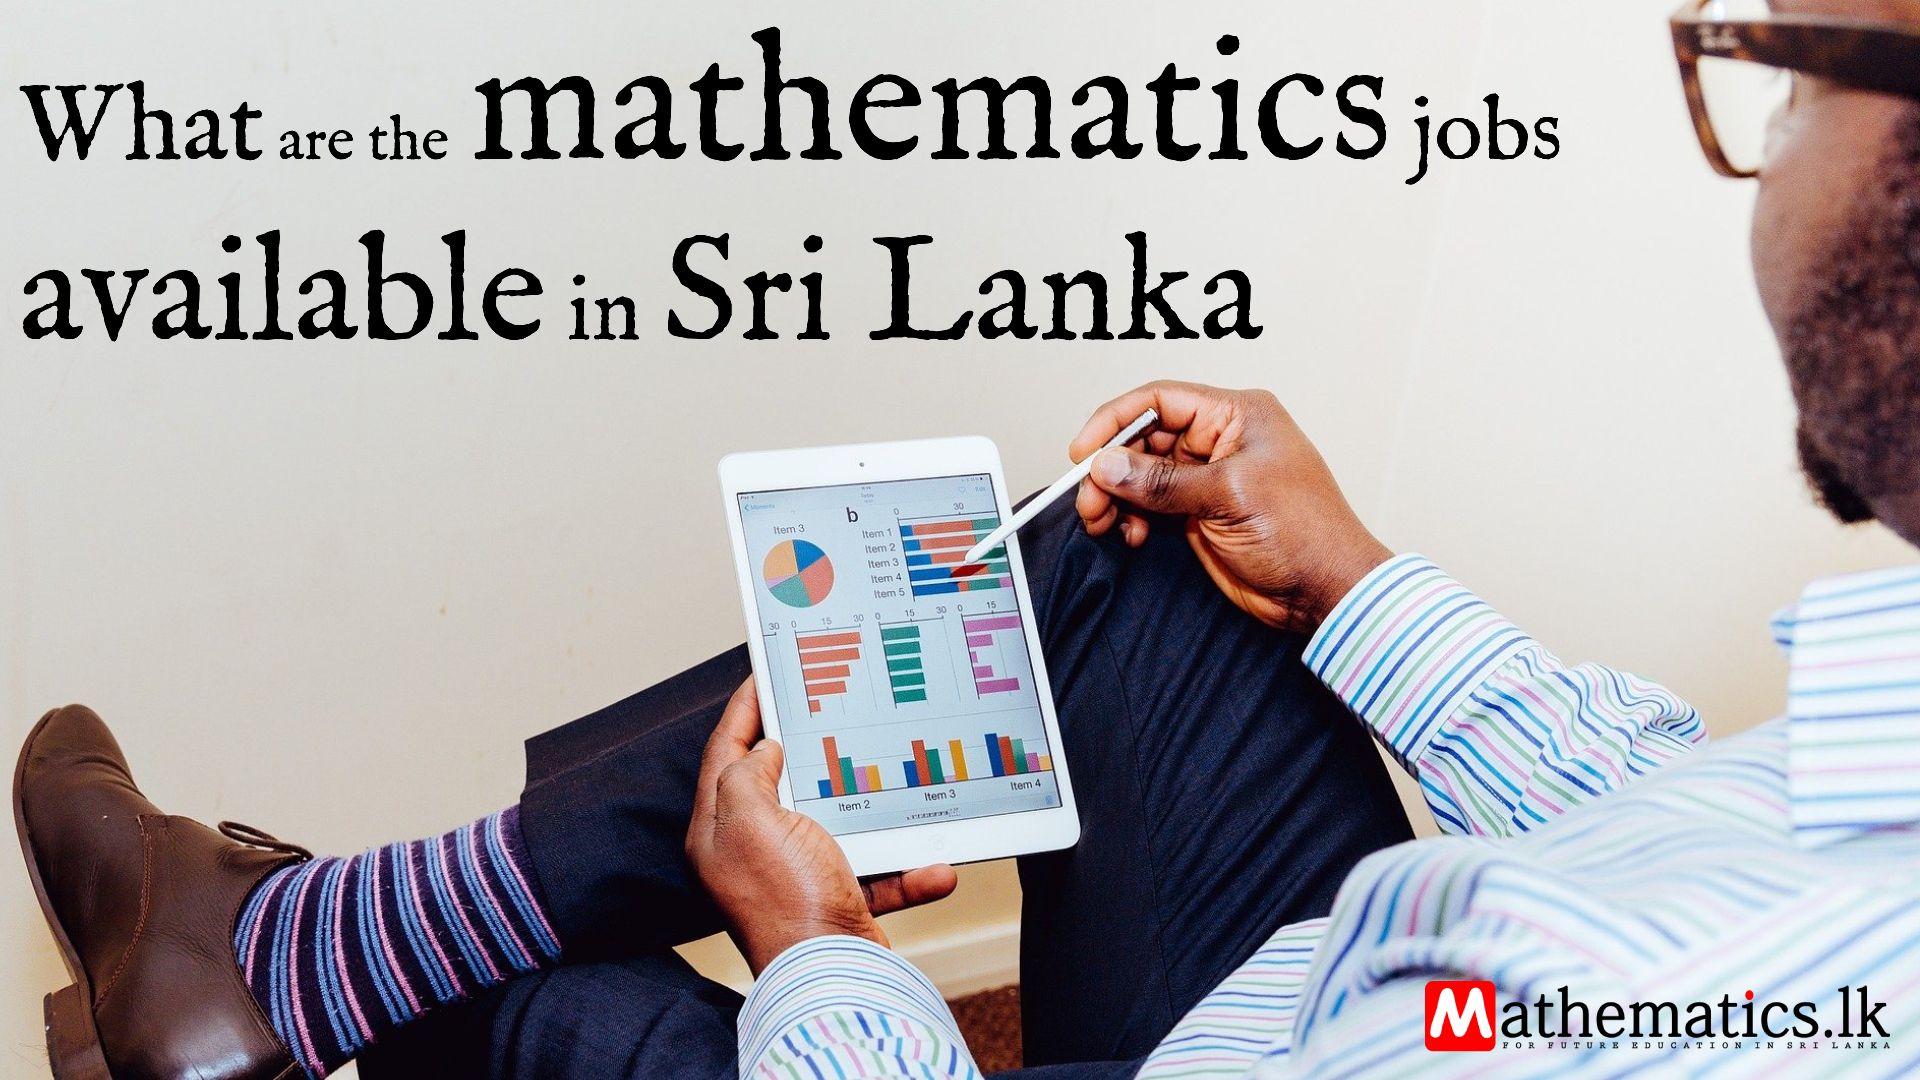 mathematics jobs available in Sri Lanka